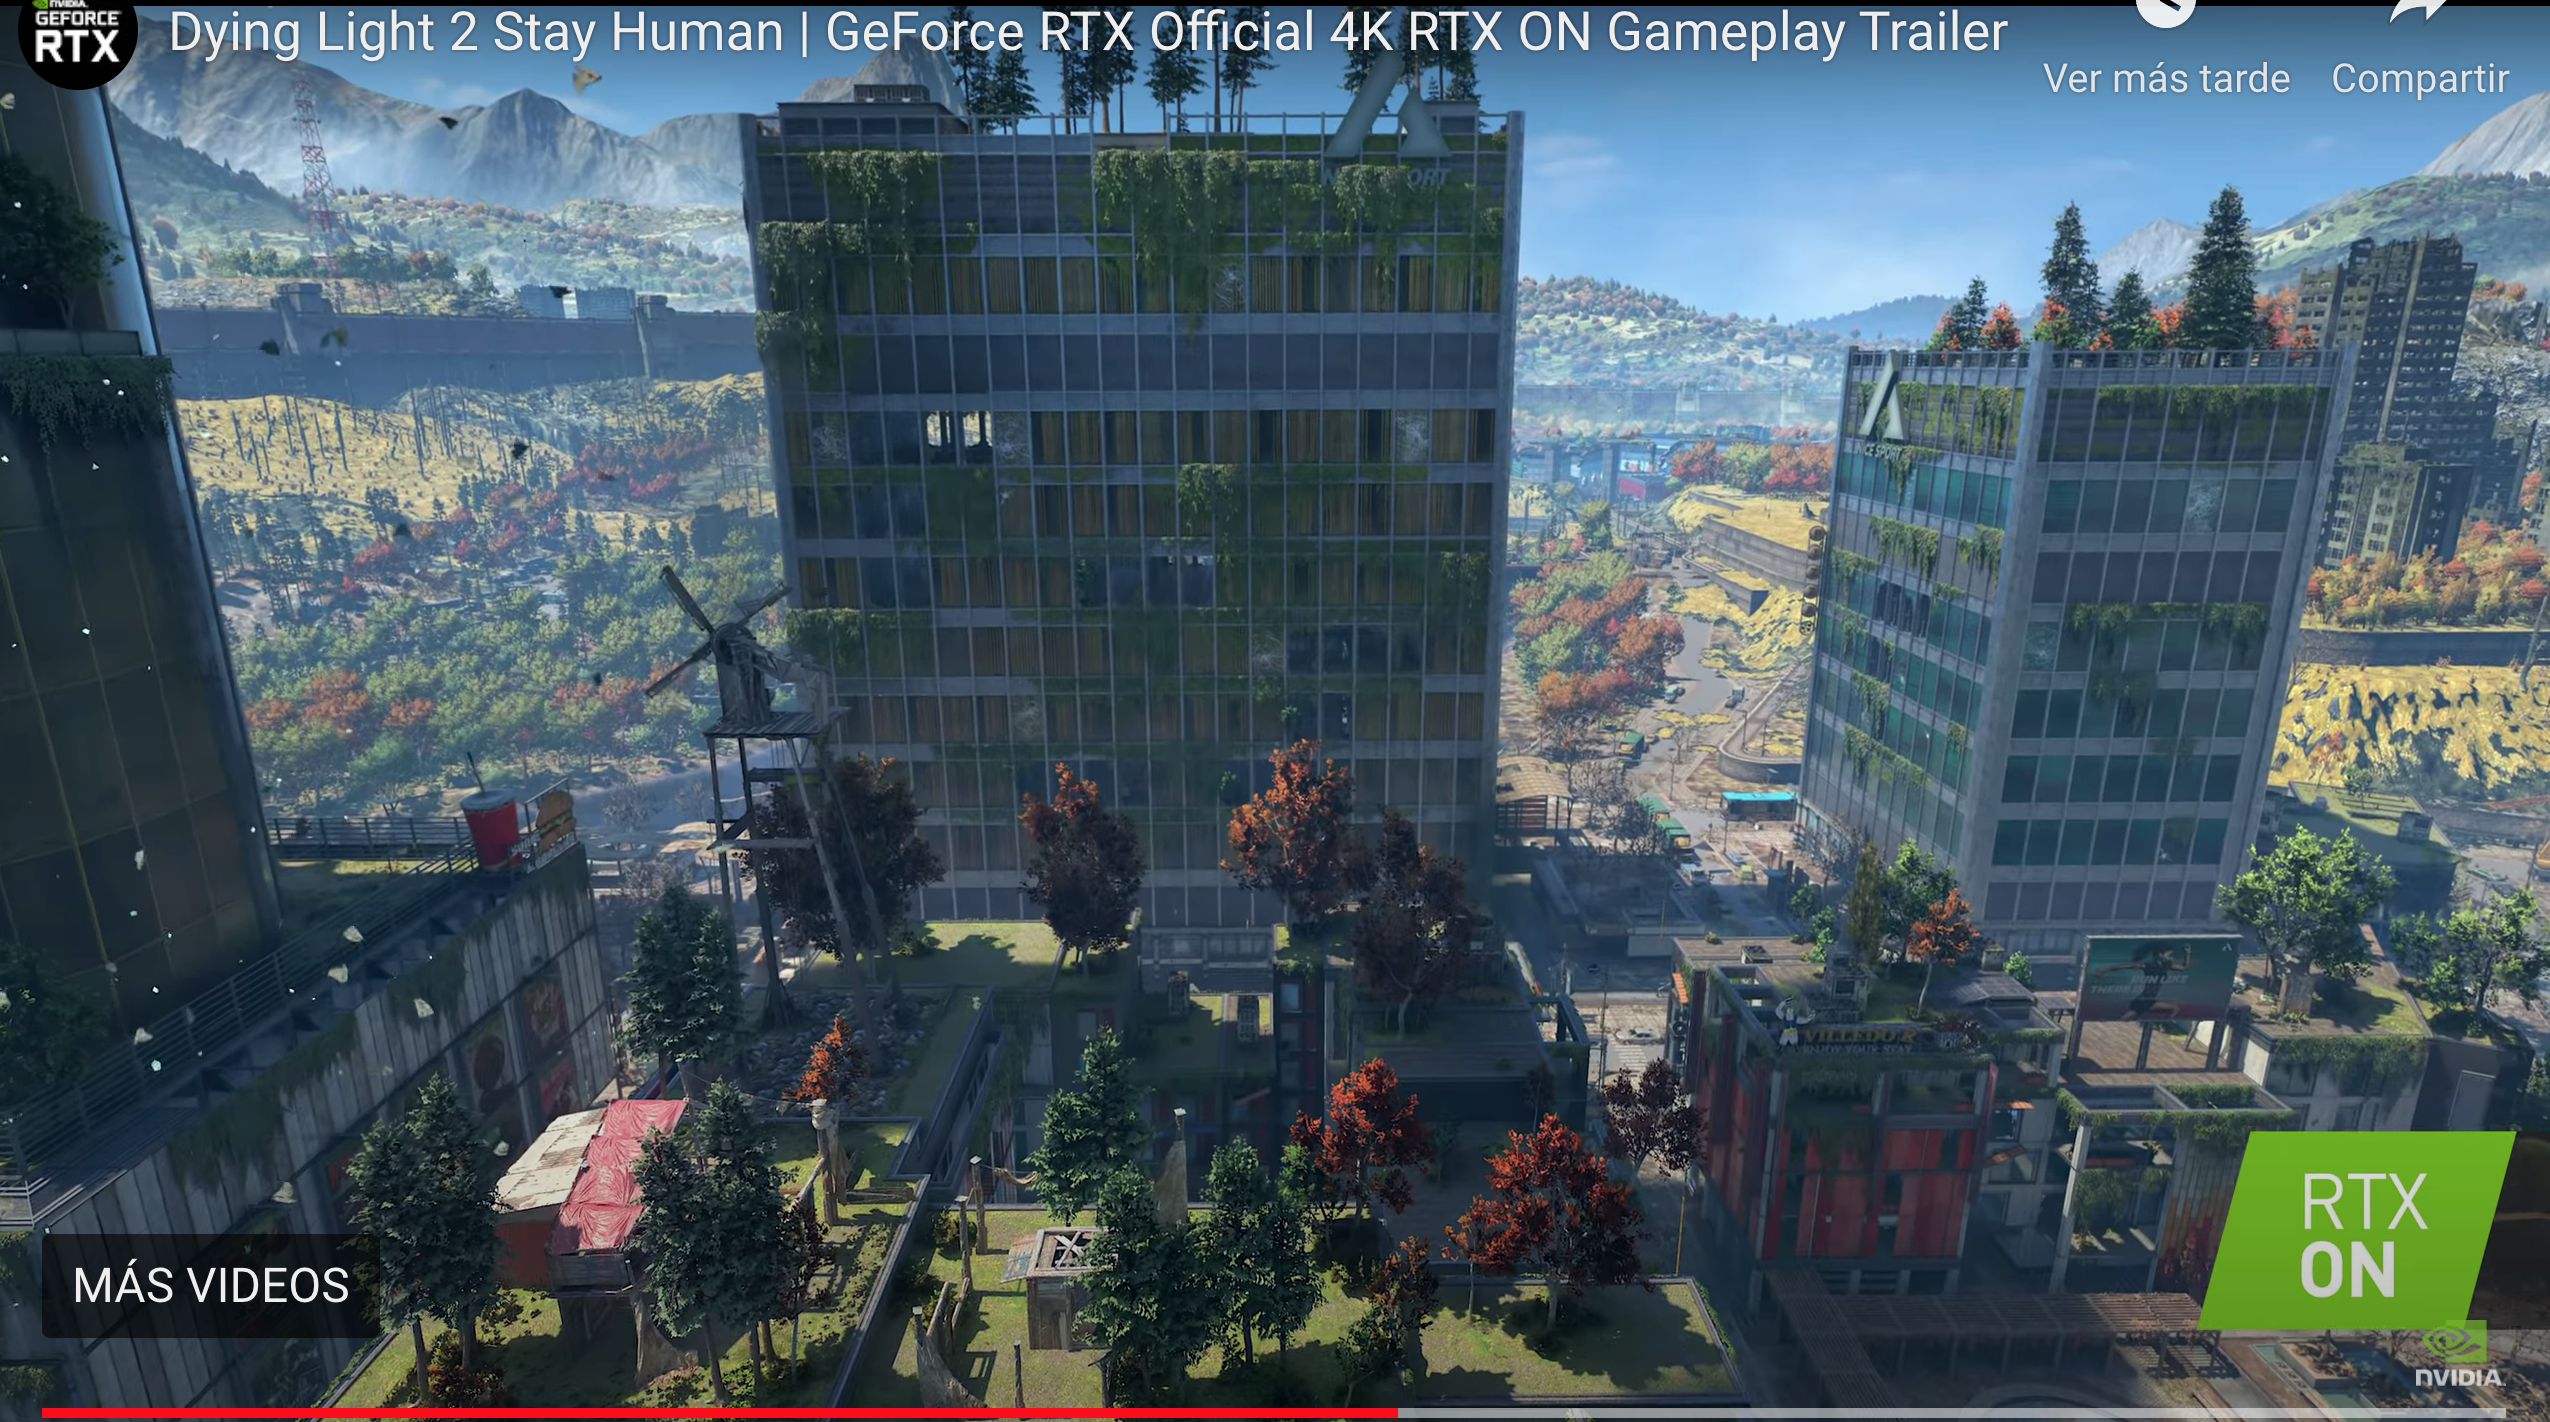 Los jugadores de GeForce están preparados para Dying Light 2 Stay Human; se publica el controlador GeForce RTX 3080 Ti y 3070 Ti Game Ready para portátiles